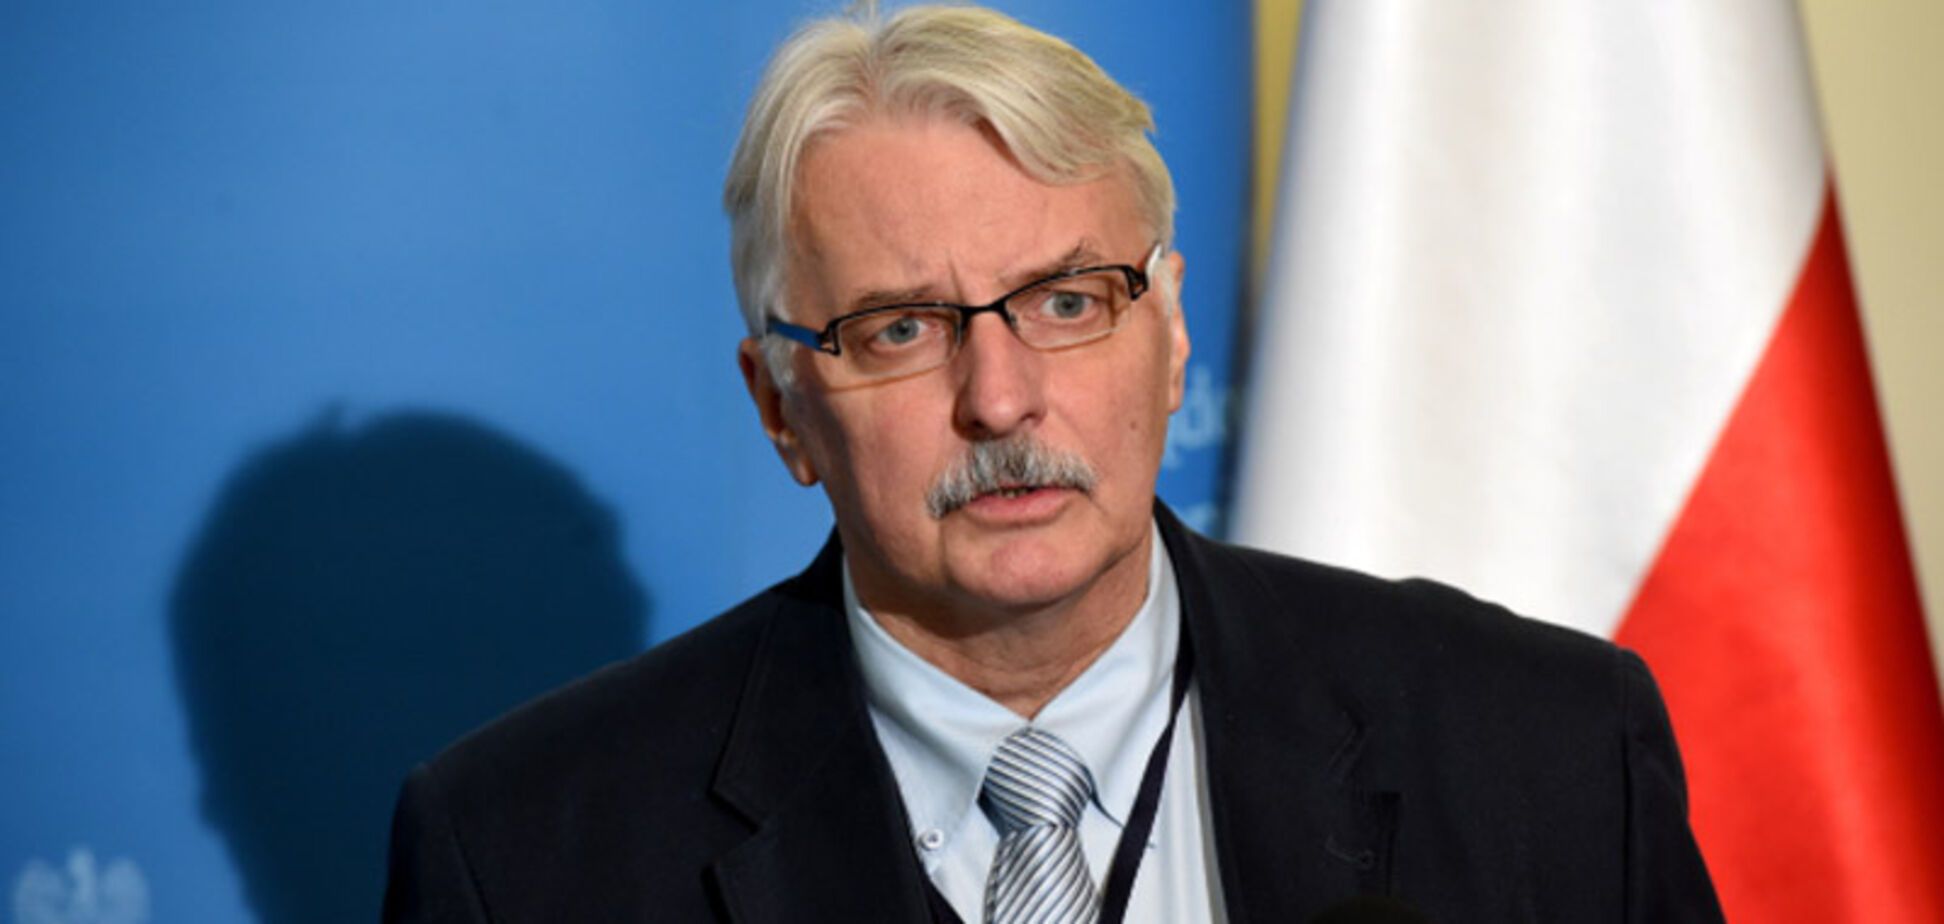 'Проблемы из-за Бандеры': польский министр объяснил свое заявление об Украине